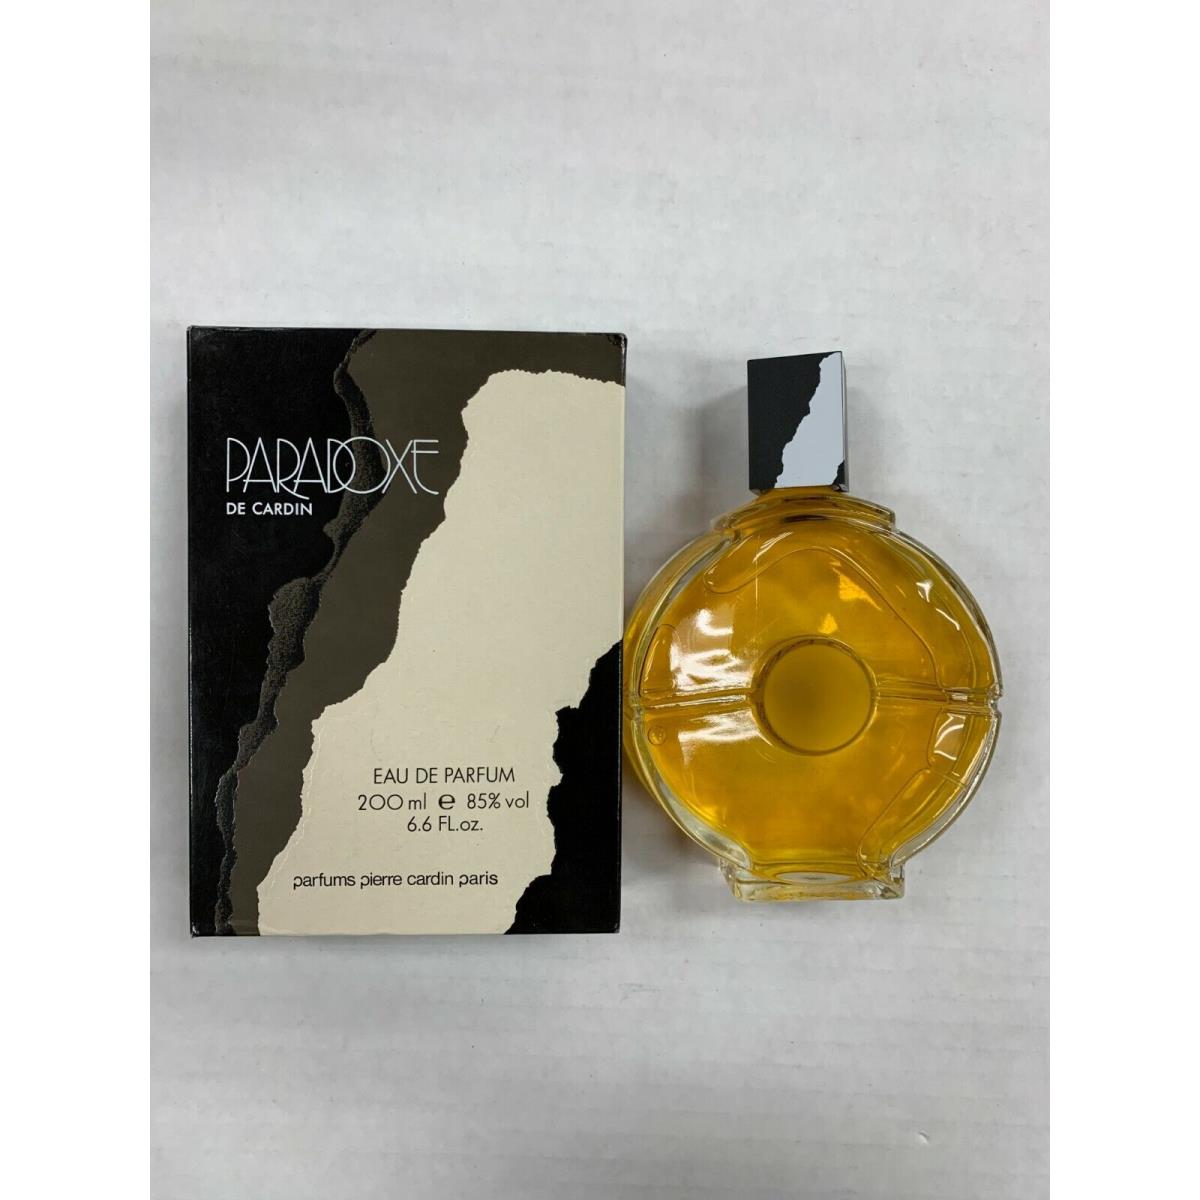 Paradoxe de Cardin by Pierre Cardin For Women 6.6 oz/200 ml Eau De Parfum Splash